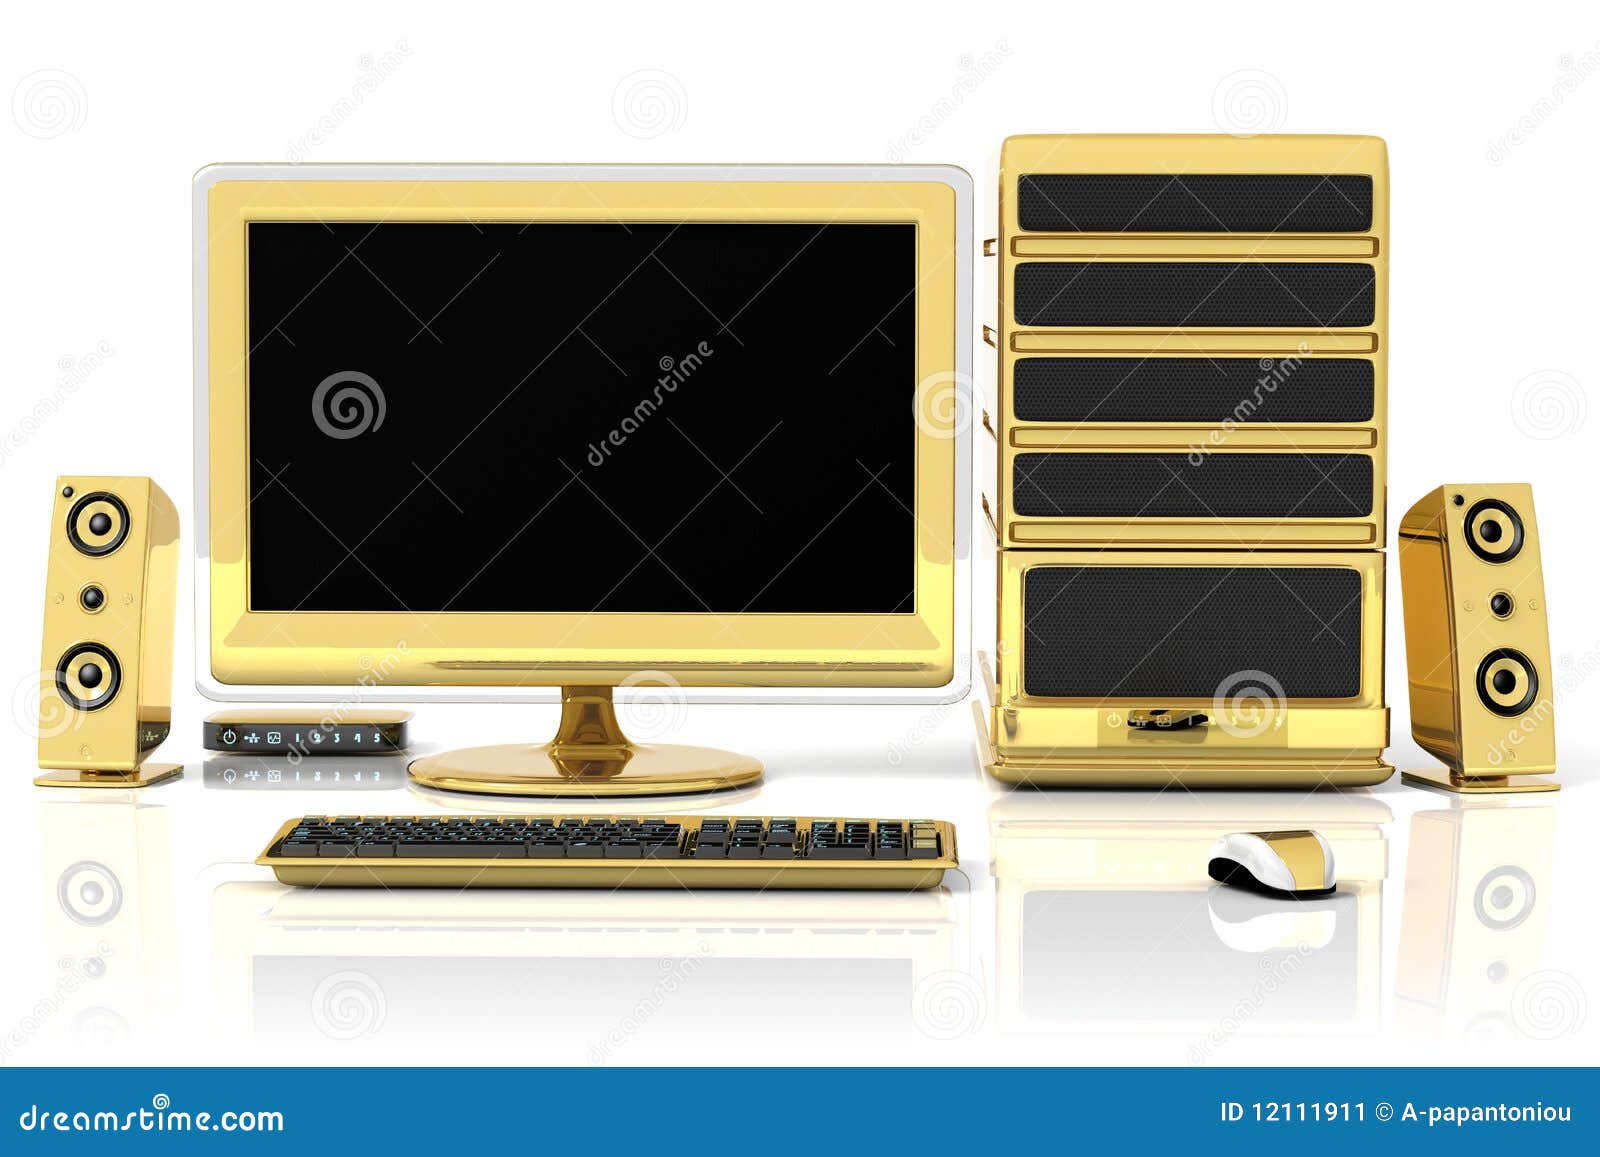 Компьютер gold. Золотой монитор. Золотой компьютер. Монитор из золота. Монитор золотого цвета.